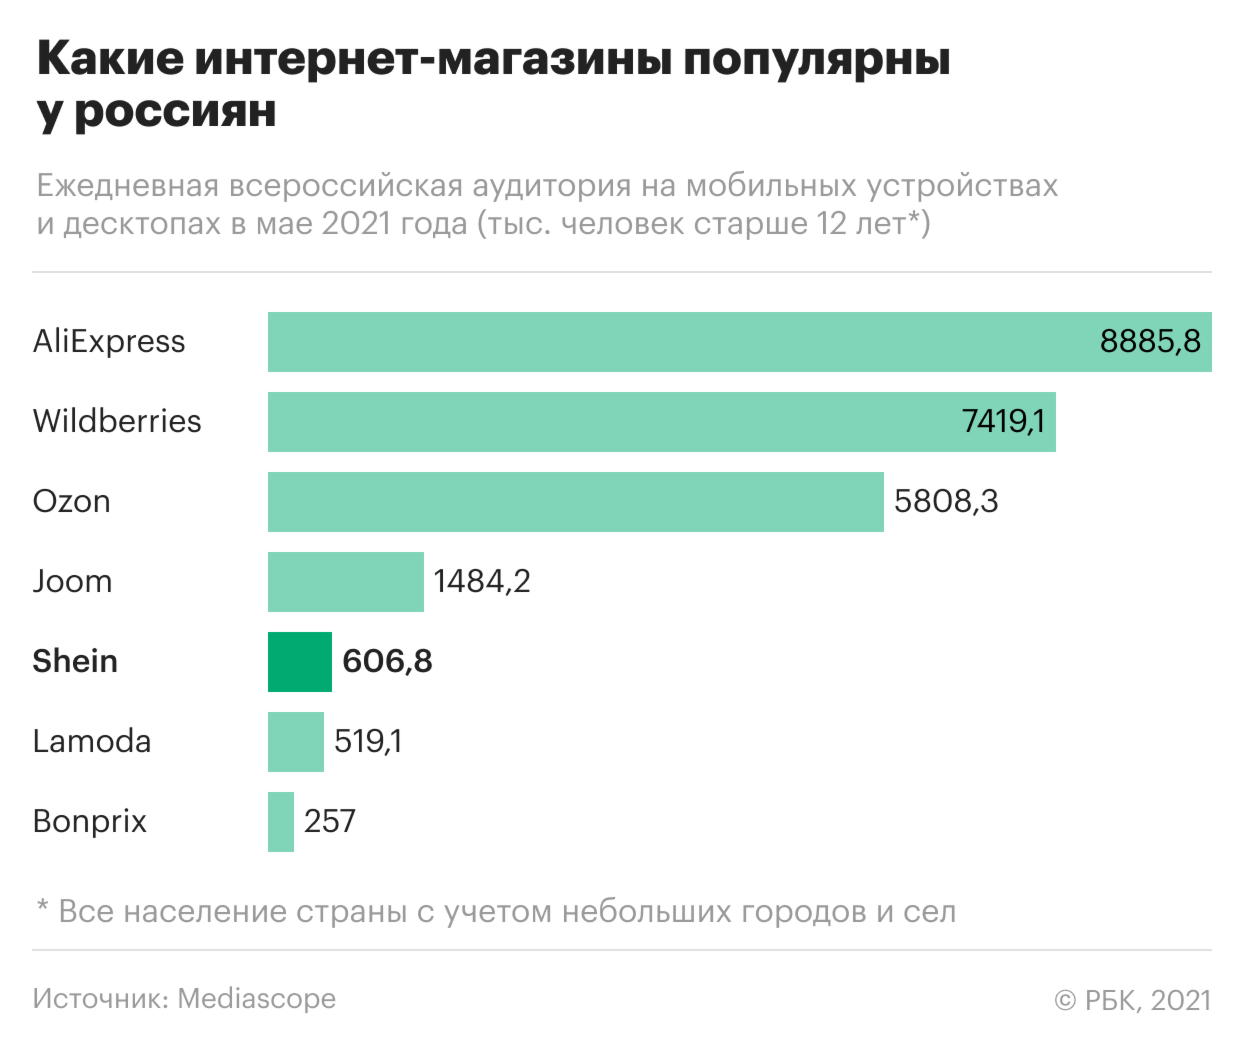 Семь самых популярных у россиян интернет-магазинов. Инфографика